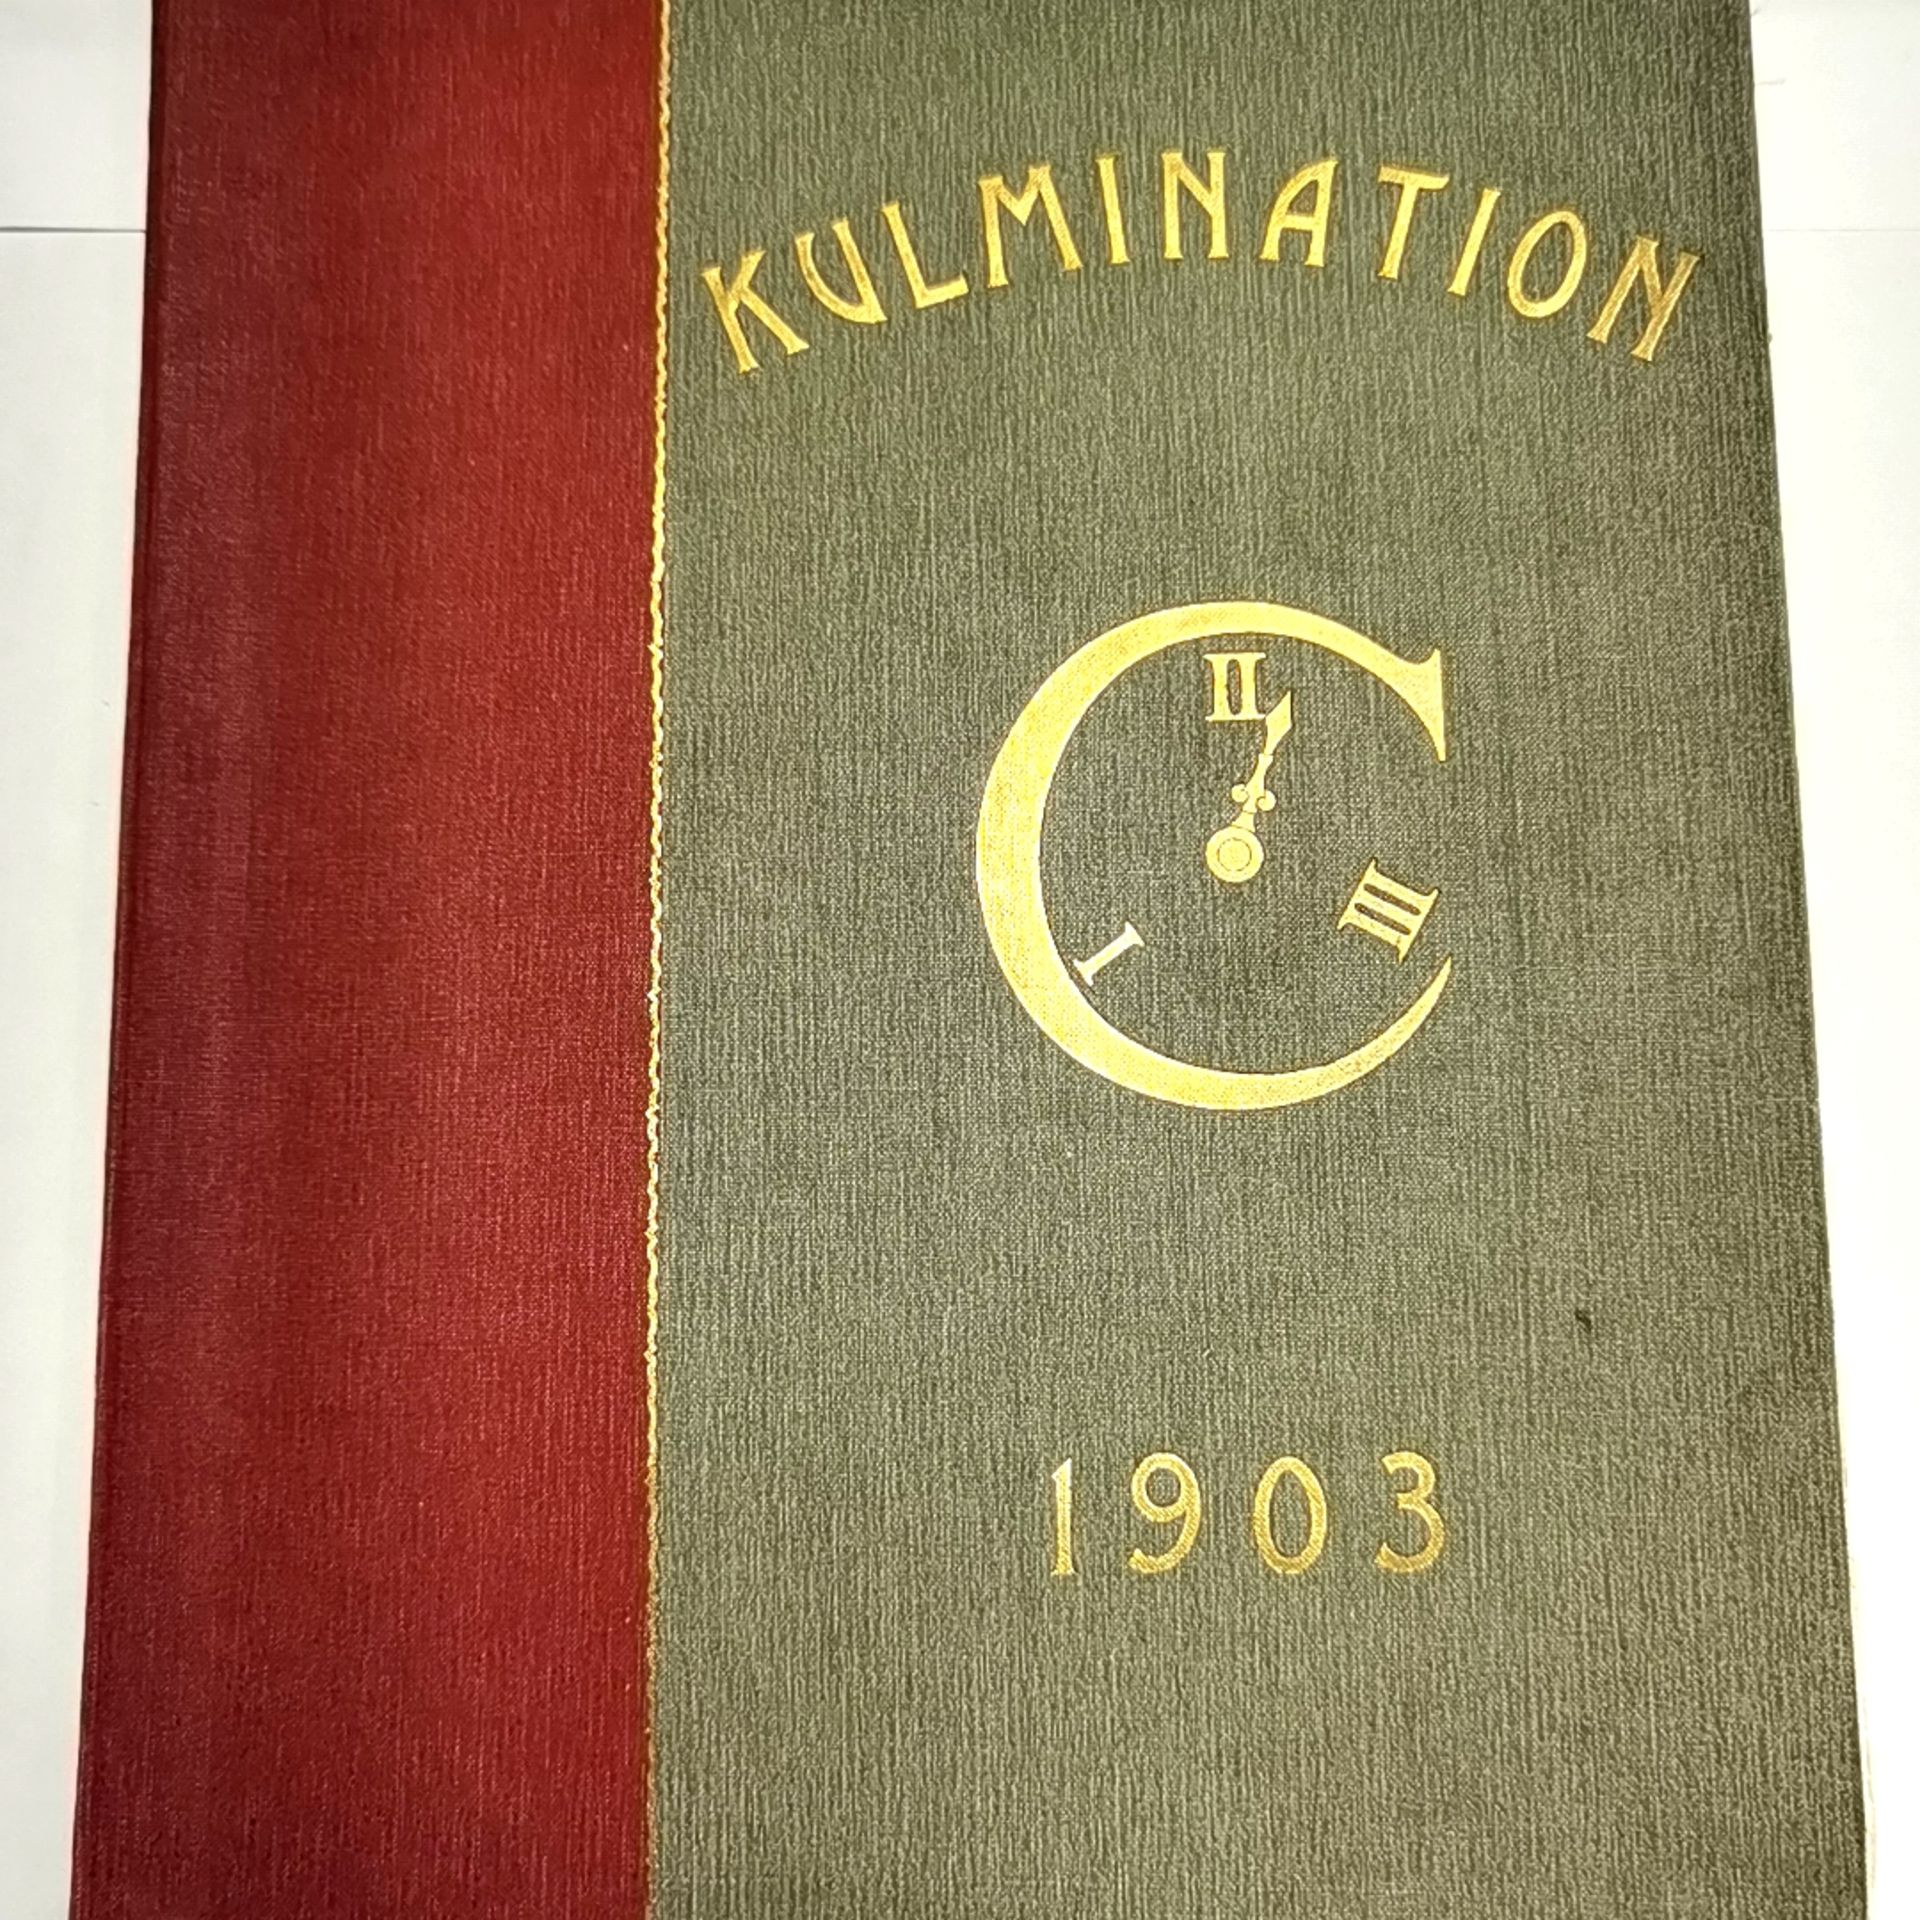 Kulmination von 1903 Ein Buch von - Image 4 of 4